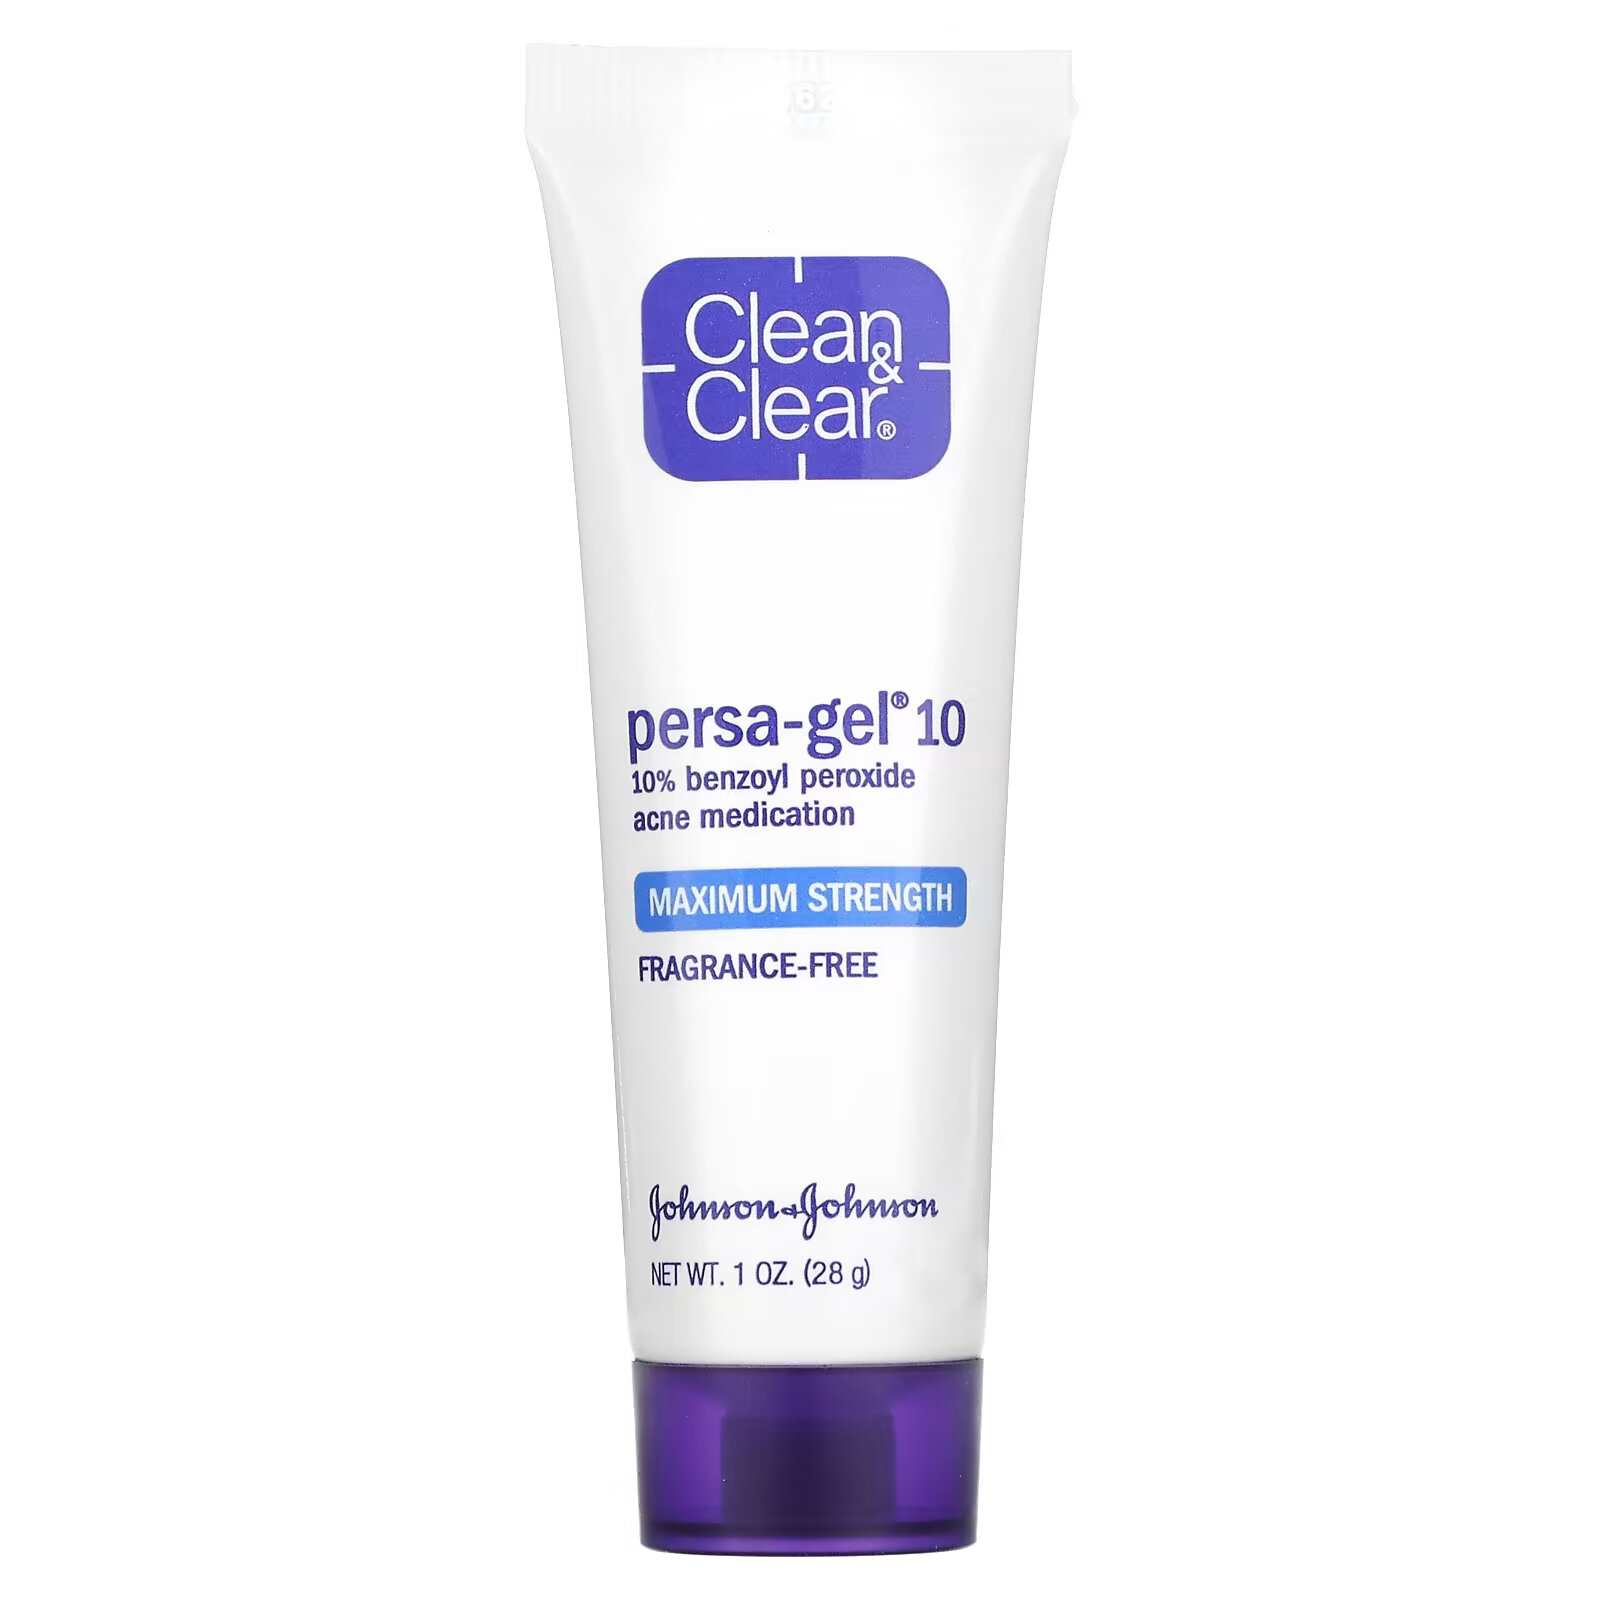 Clean & Clear, Persa-Gel 10, максимальная сила, 1 унц. (28 г) neutrogena rapid clear гель от прыщей максимальная сила 28 г 1 унция